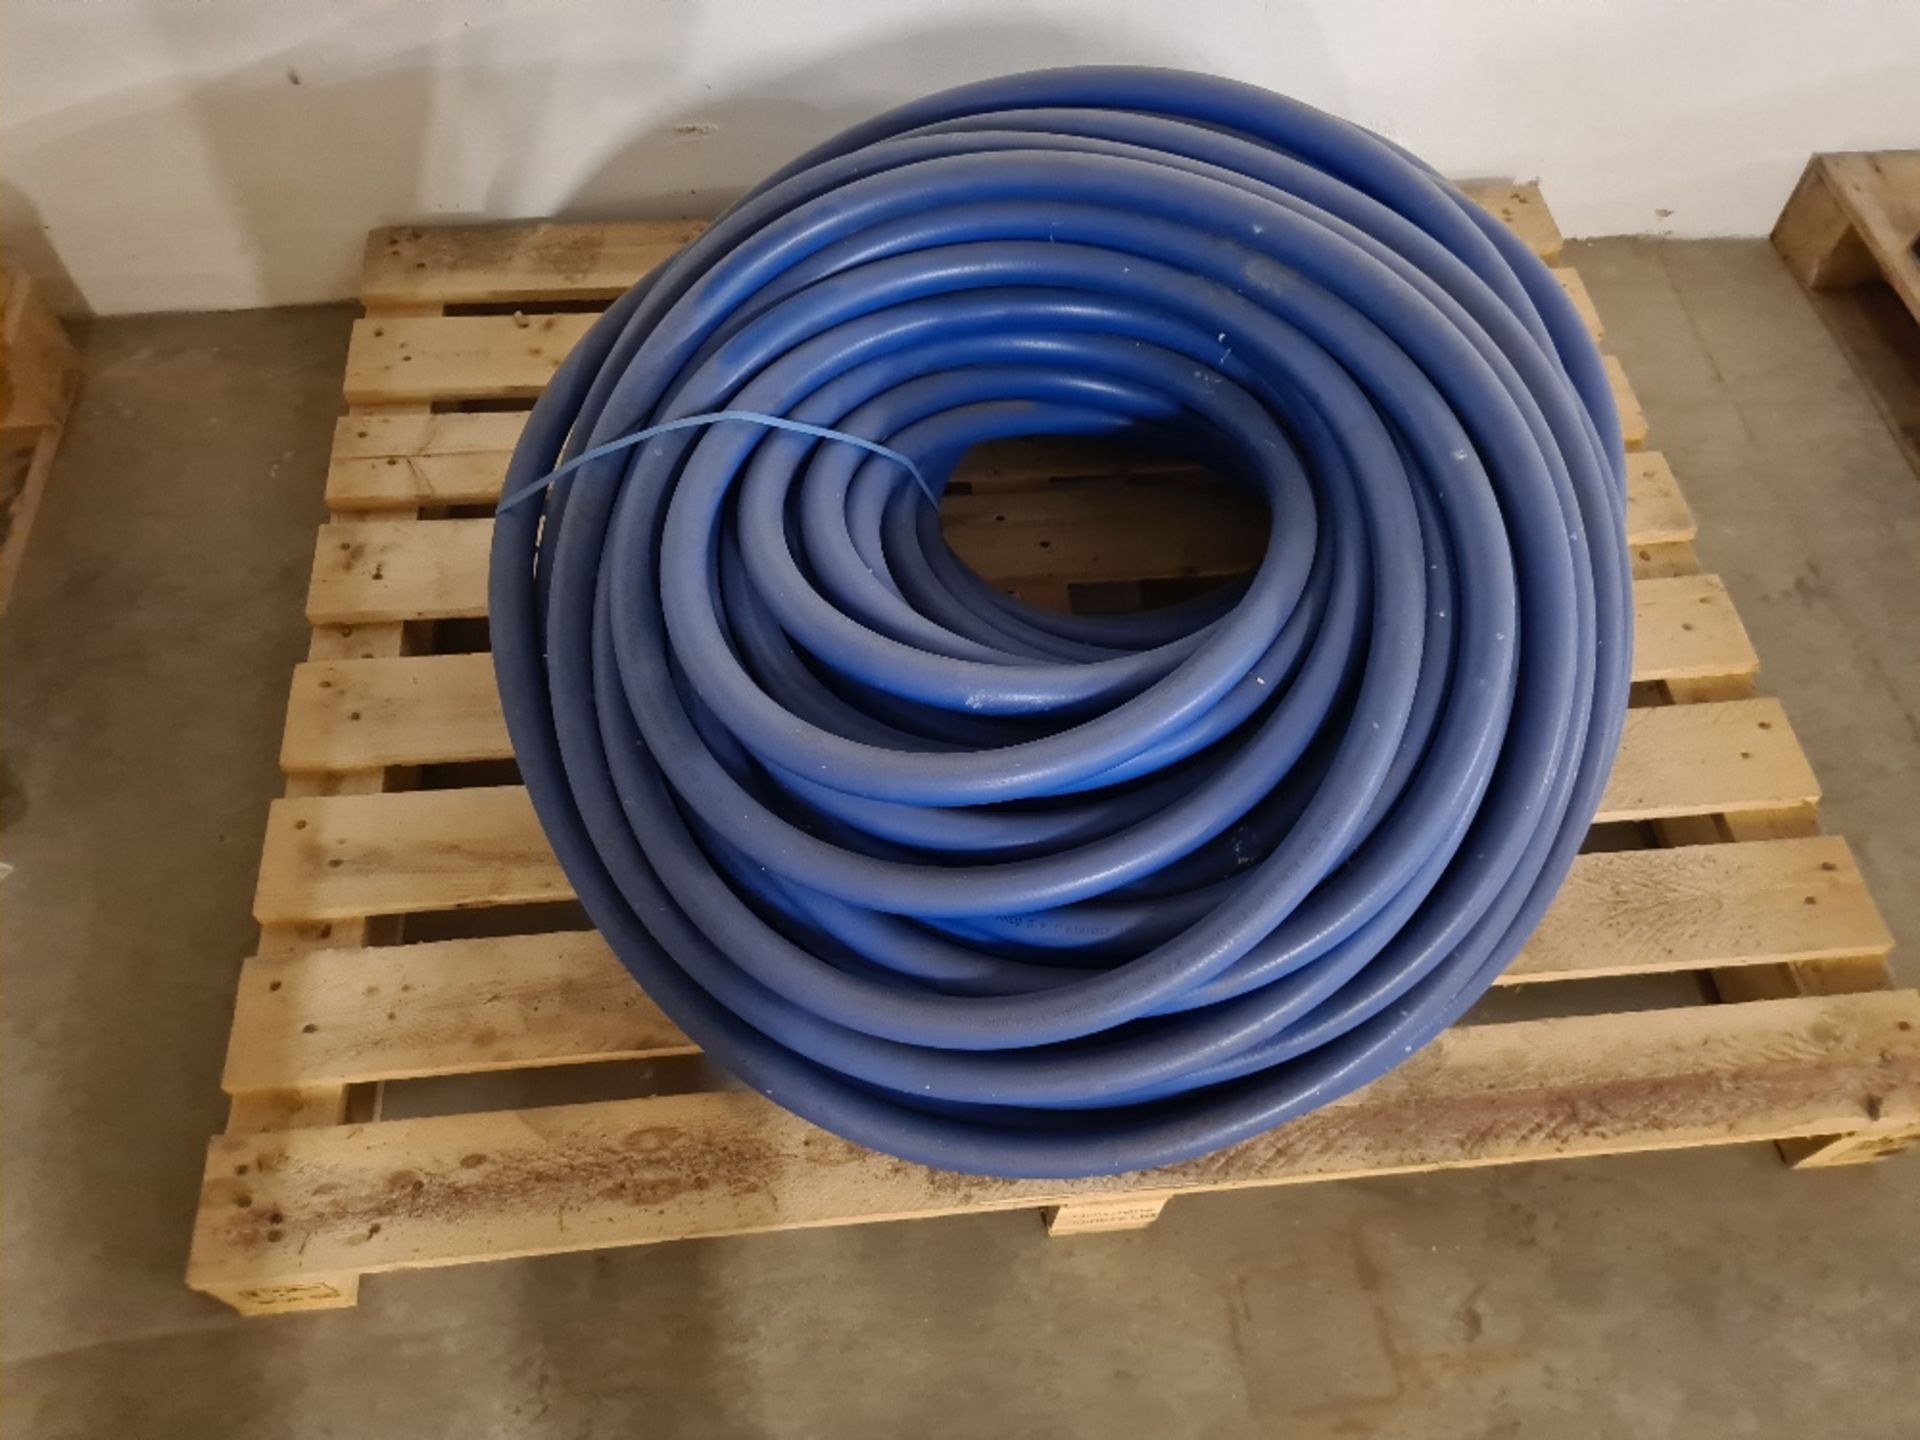 Pallet of blue hose.